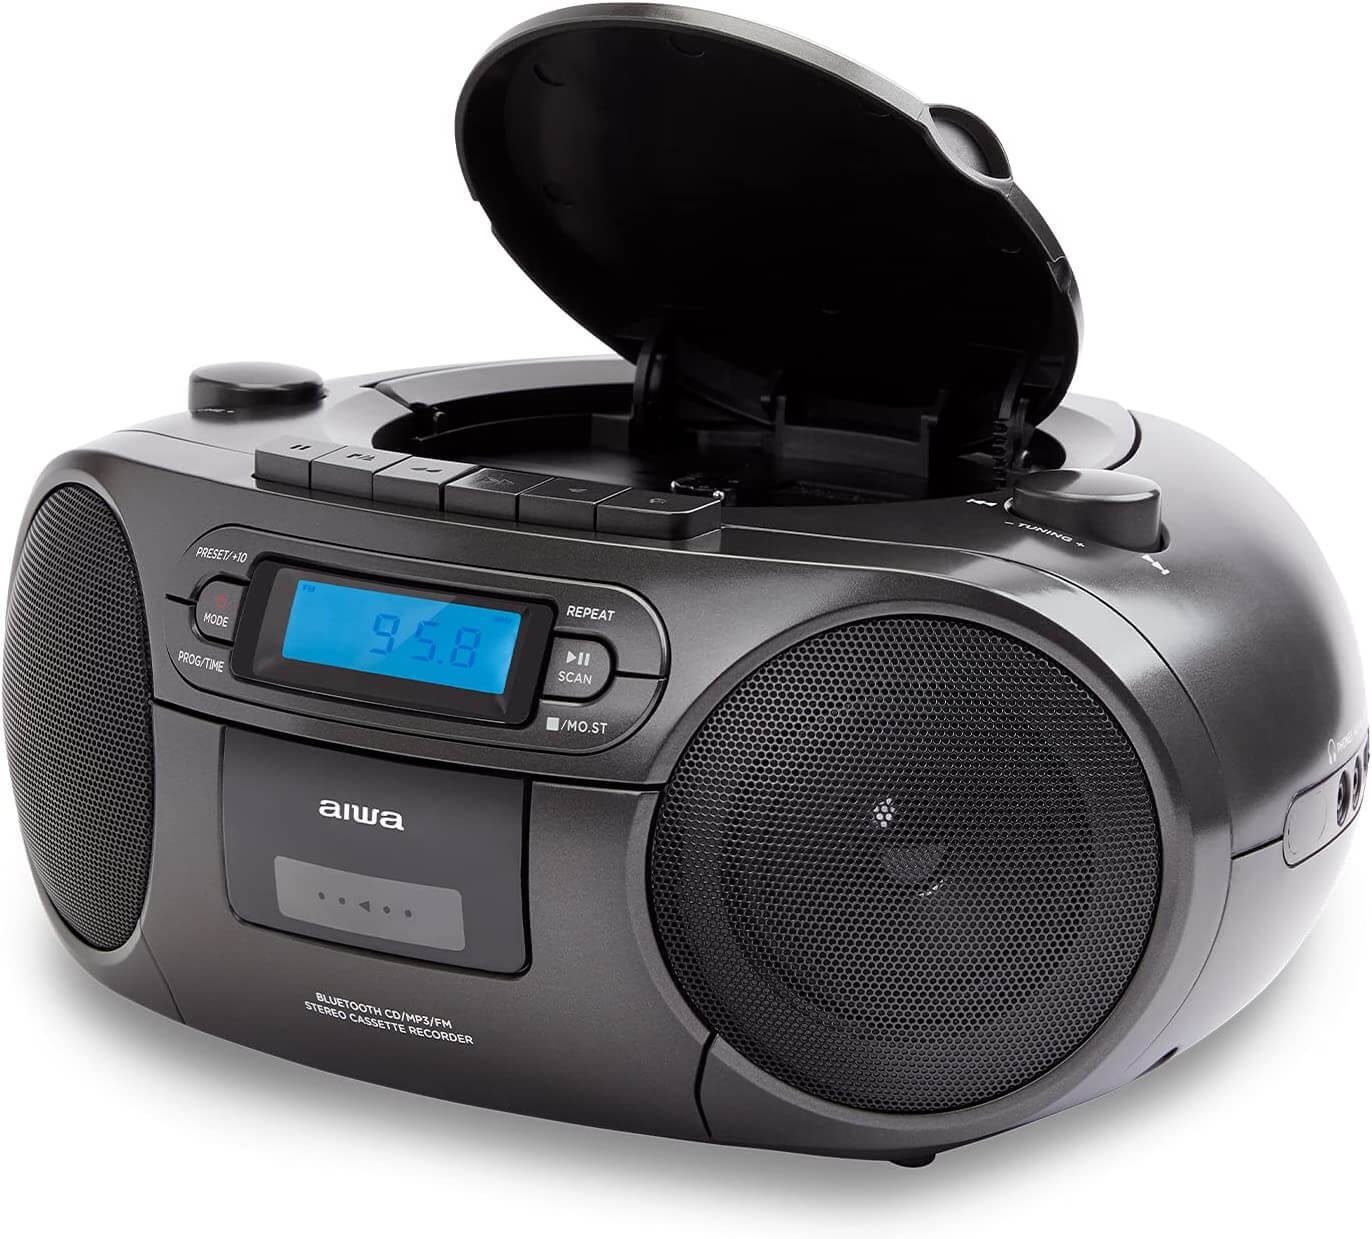 Aiwa BBTC-550 Tragbarer CD Player mit Radio, Kassette, Bluetooth und USB  tragbarer CD-Player (Digitaluhr mit 24h Anzeigeformat 6 W RMS  Audio-Ausgangsleistung)